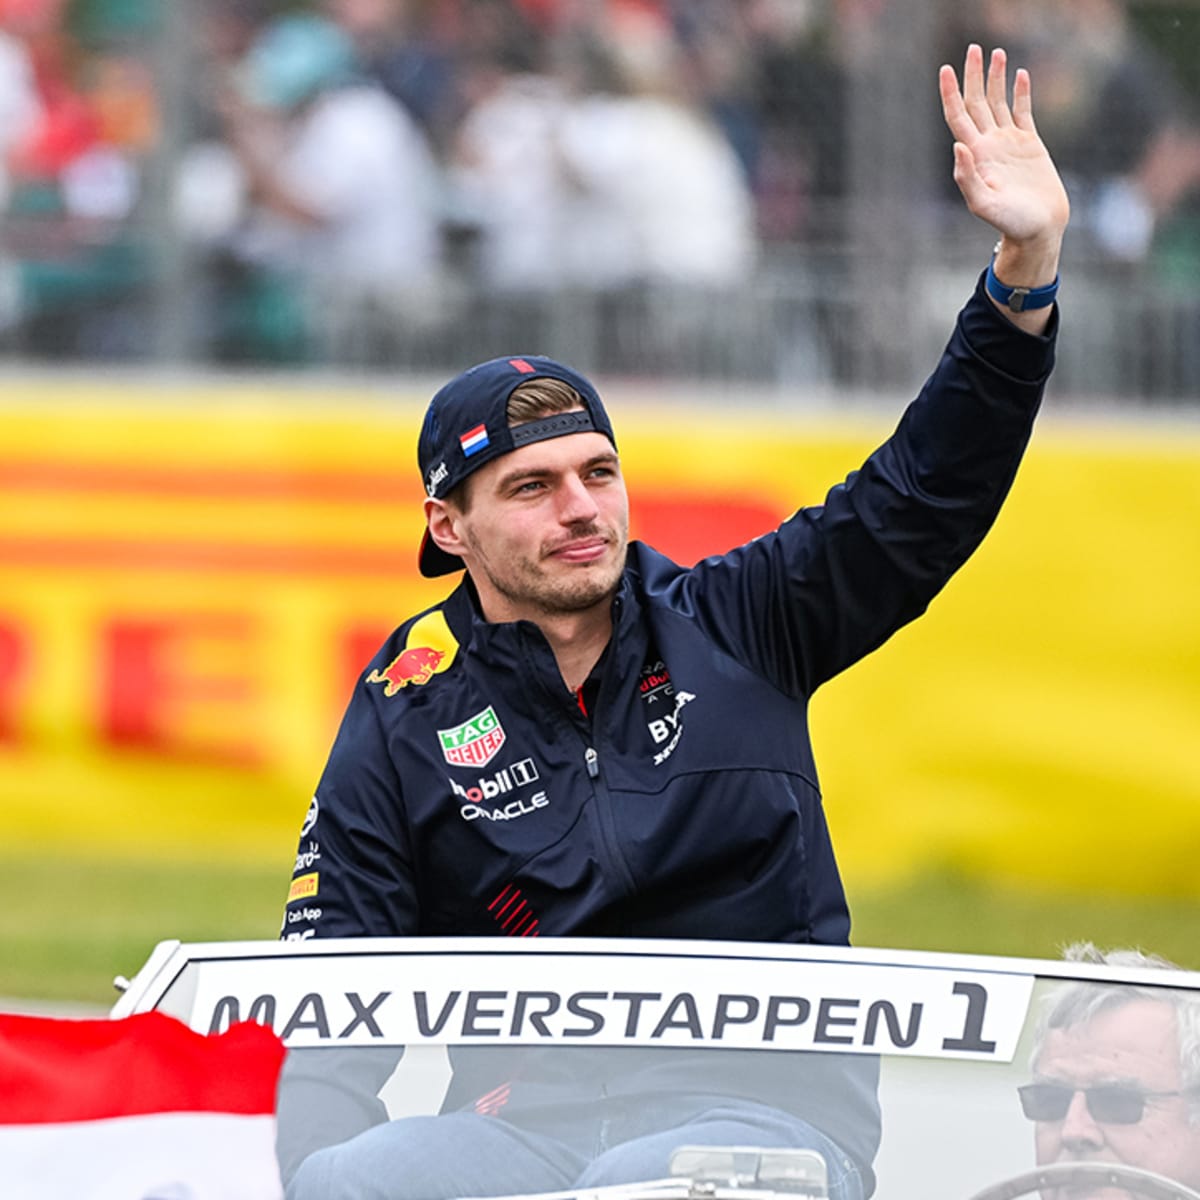 Max Verstappen Wins Inaugural F1 Miami Grand Prix: 'Incredibly Happy